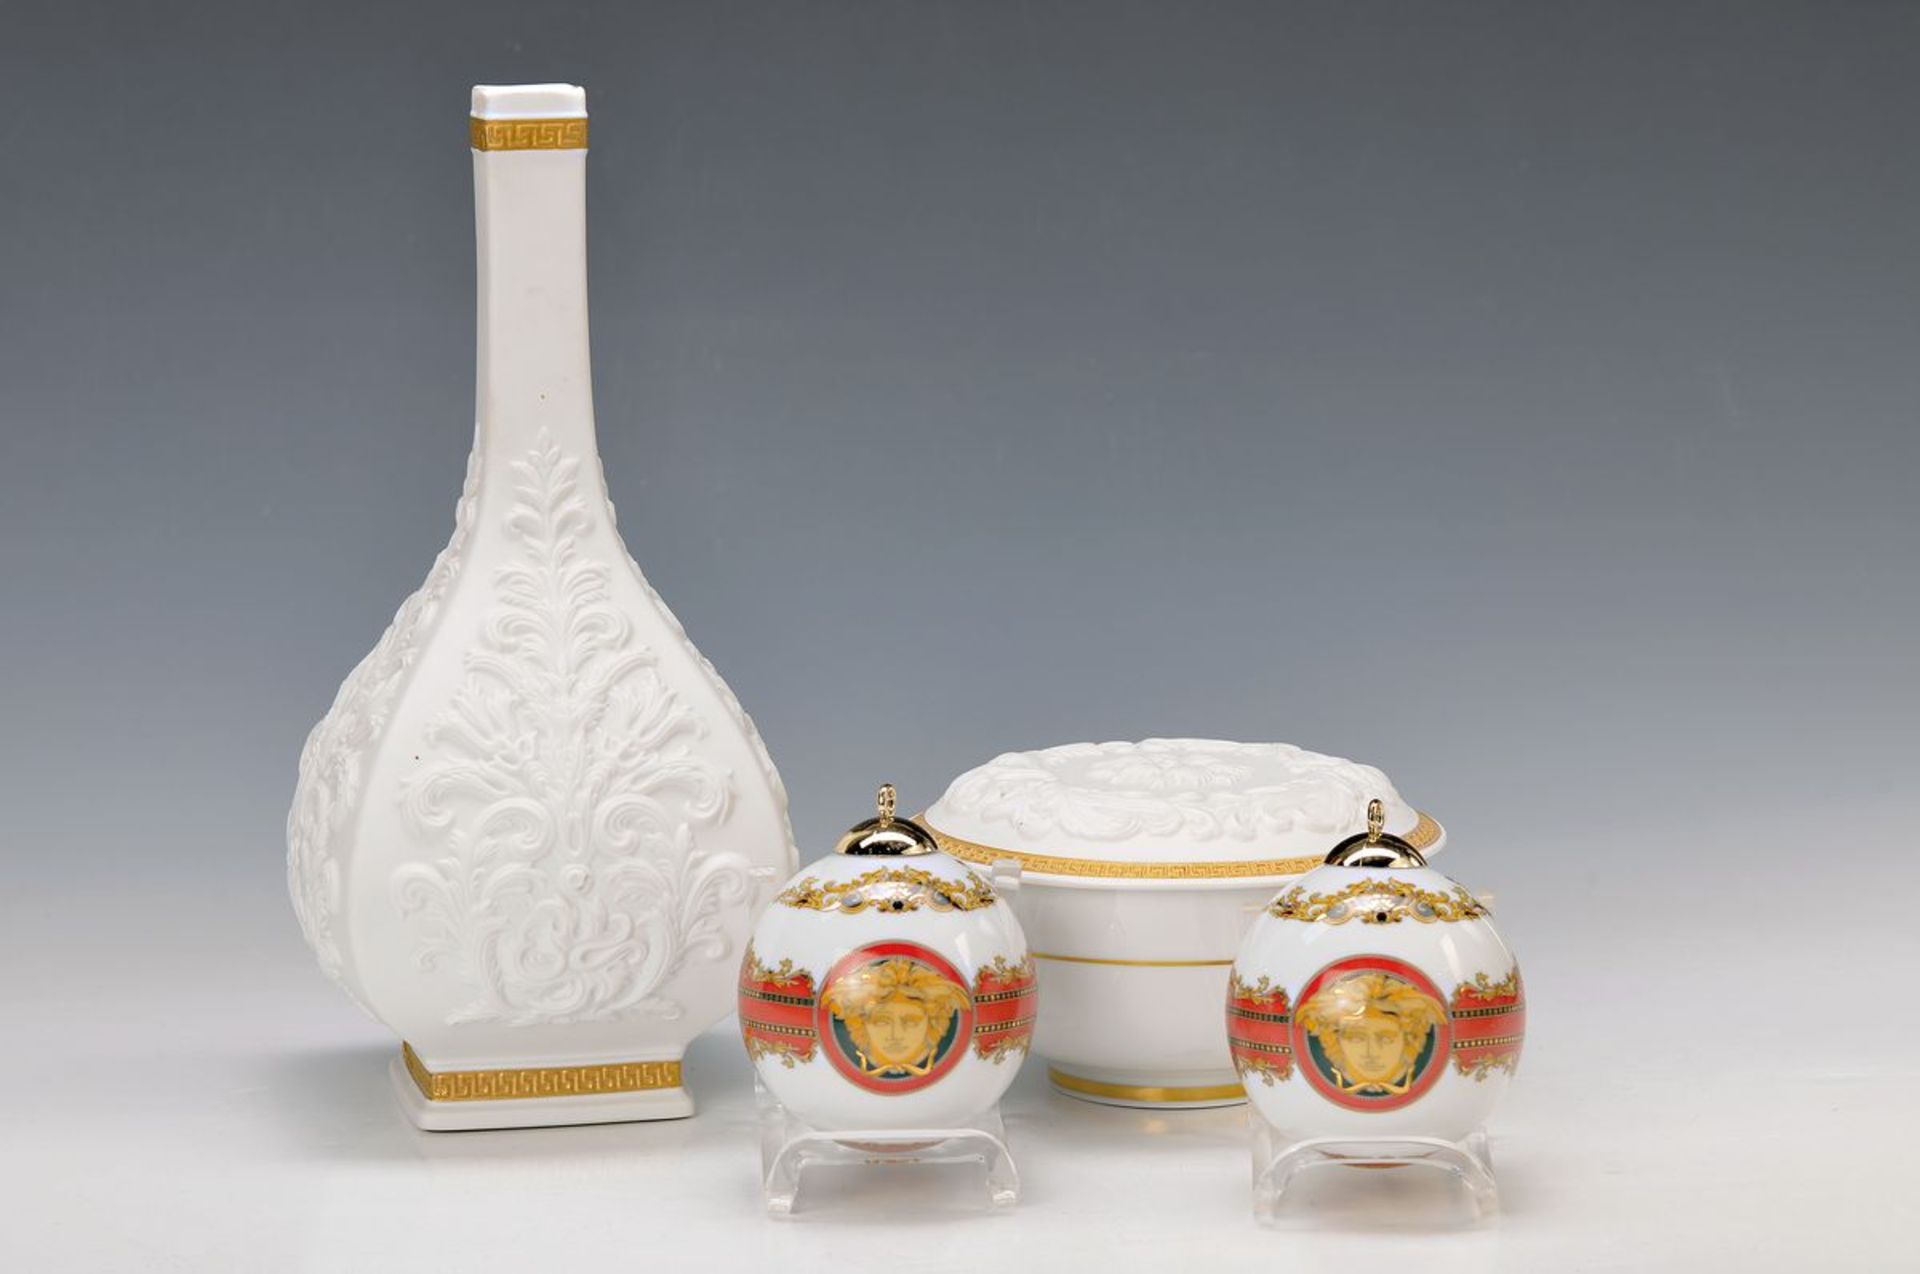 5 Teile Rosenthal, Dekor Gianni Versace, Vase und Deckeldose White Baroque, Biskuitporzellan